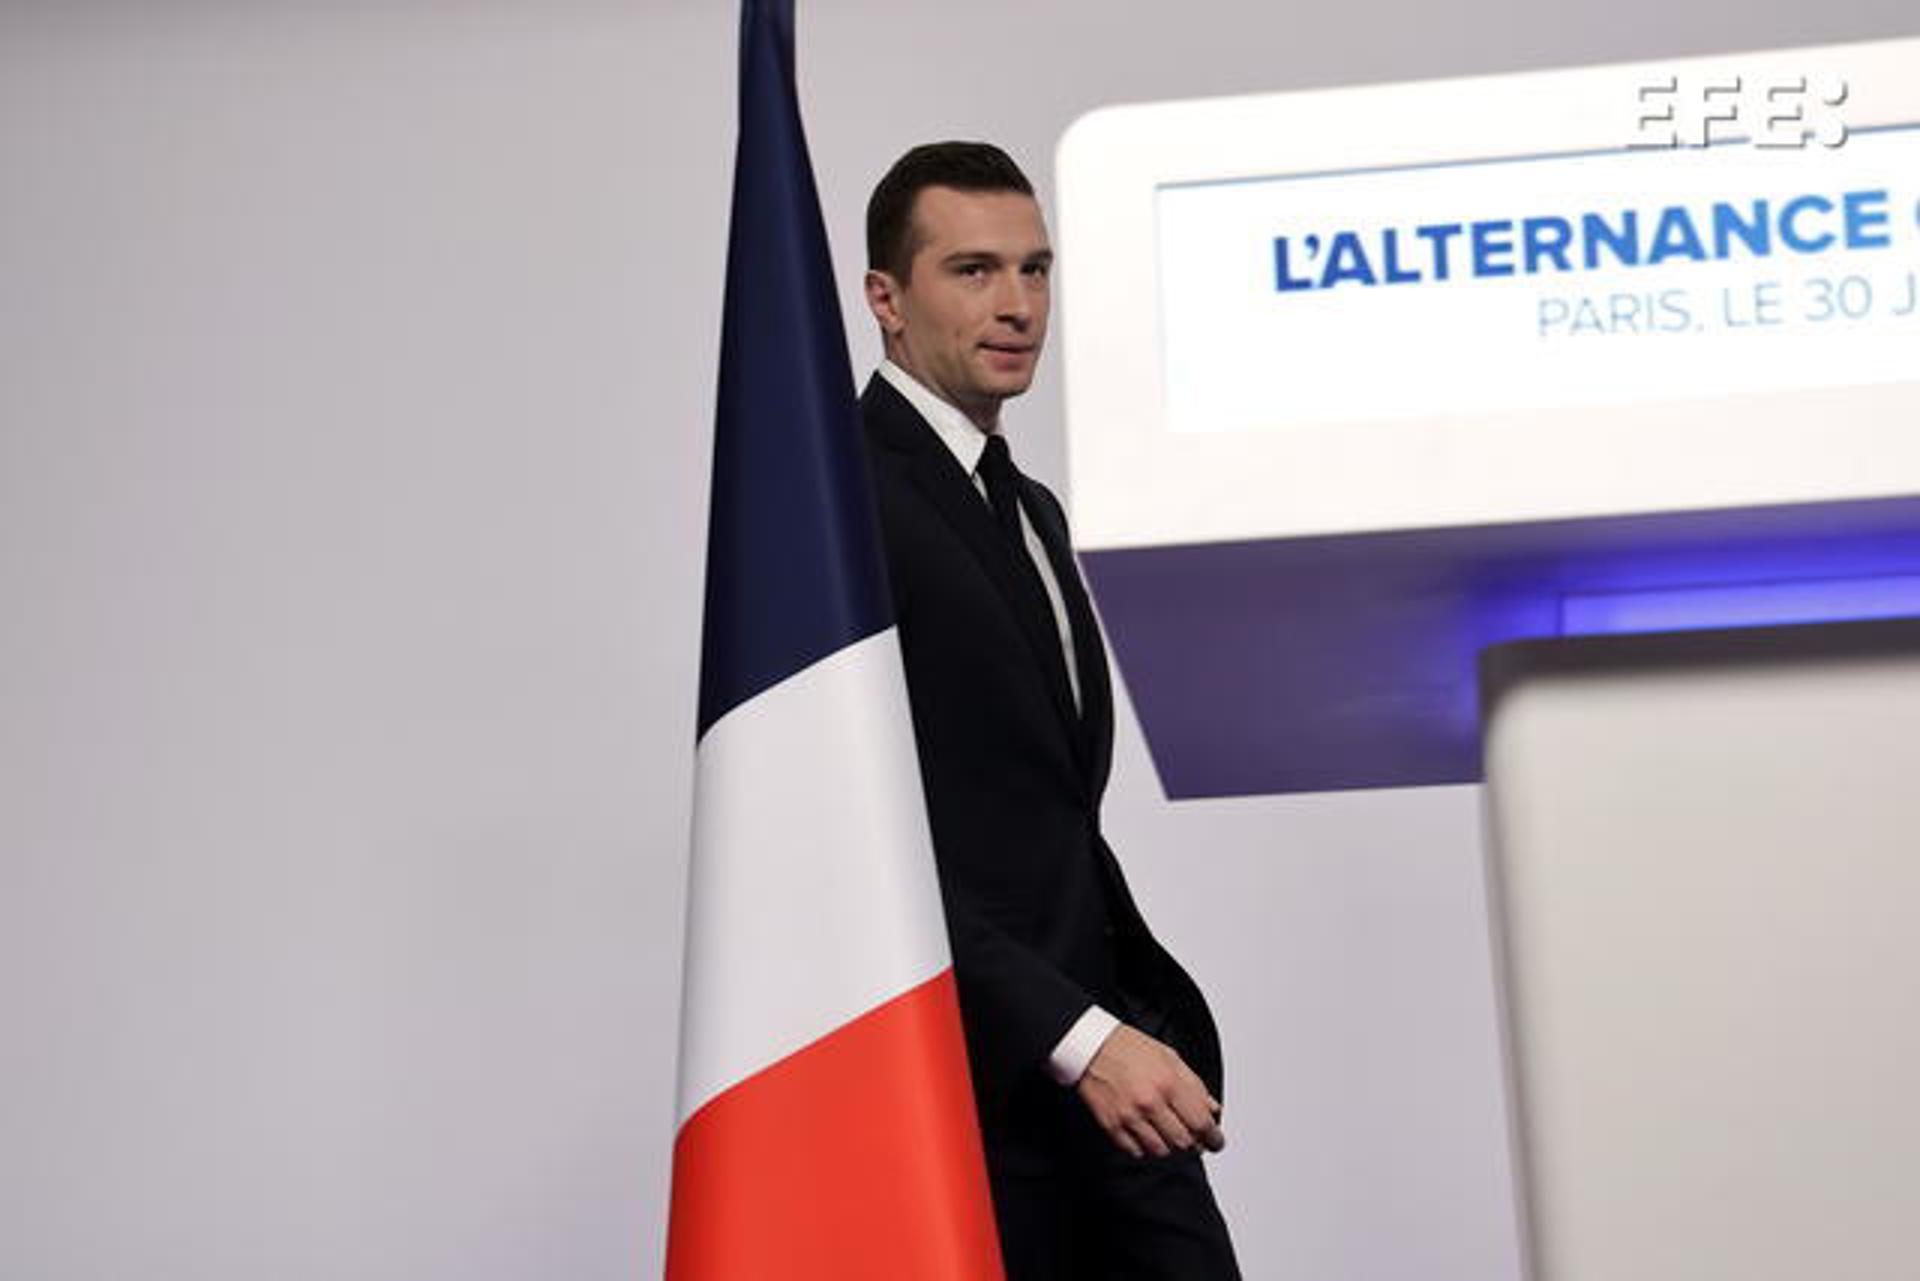 El líder ultraderechista francés Jordan Bardella comparece ante los medios de comunicación tras su victoria en la primera vuelta de las elecciones legislativas este domingo en Francia. EFE/EPA/Christophe Petit Tesson
